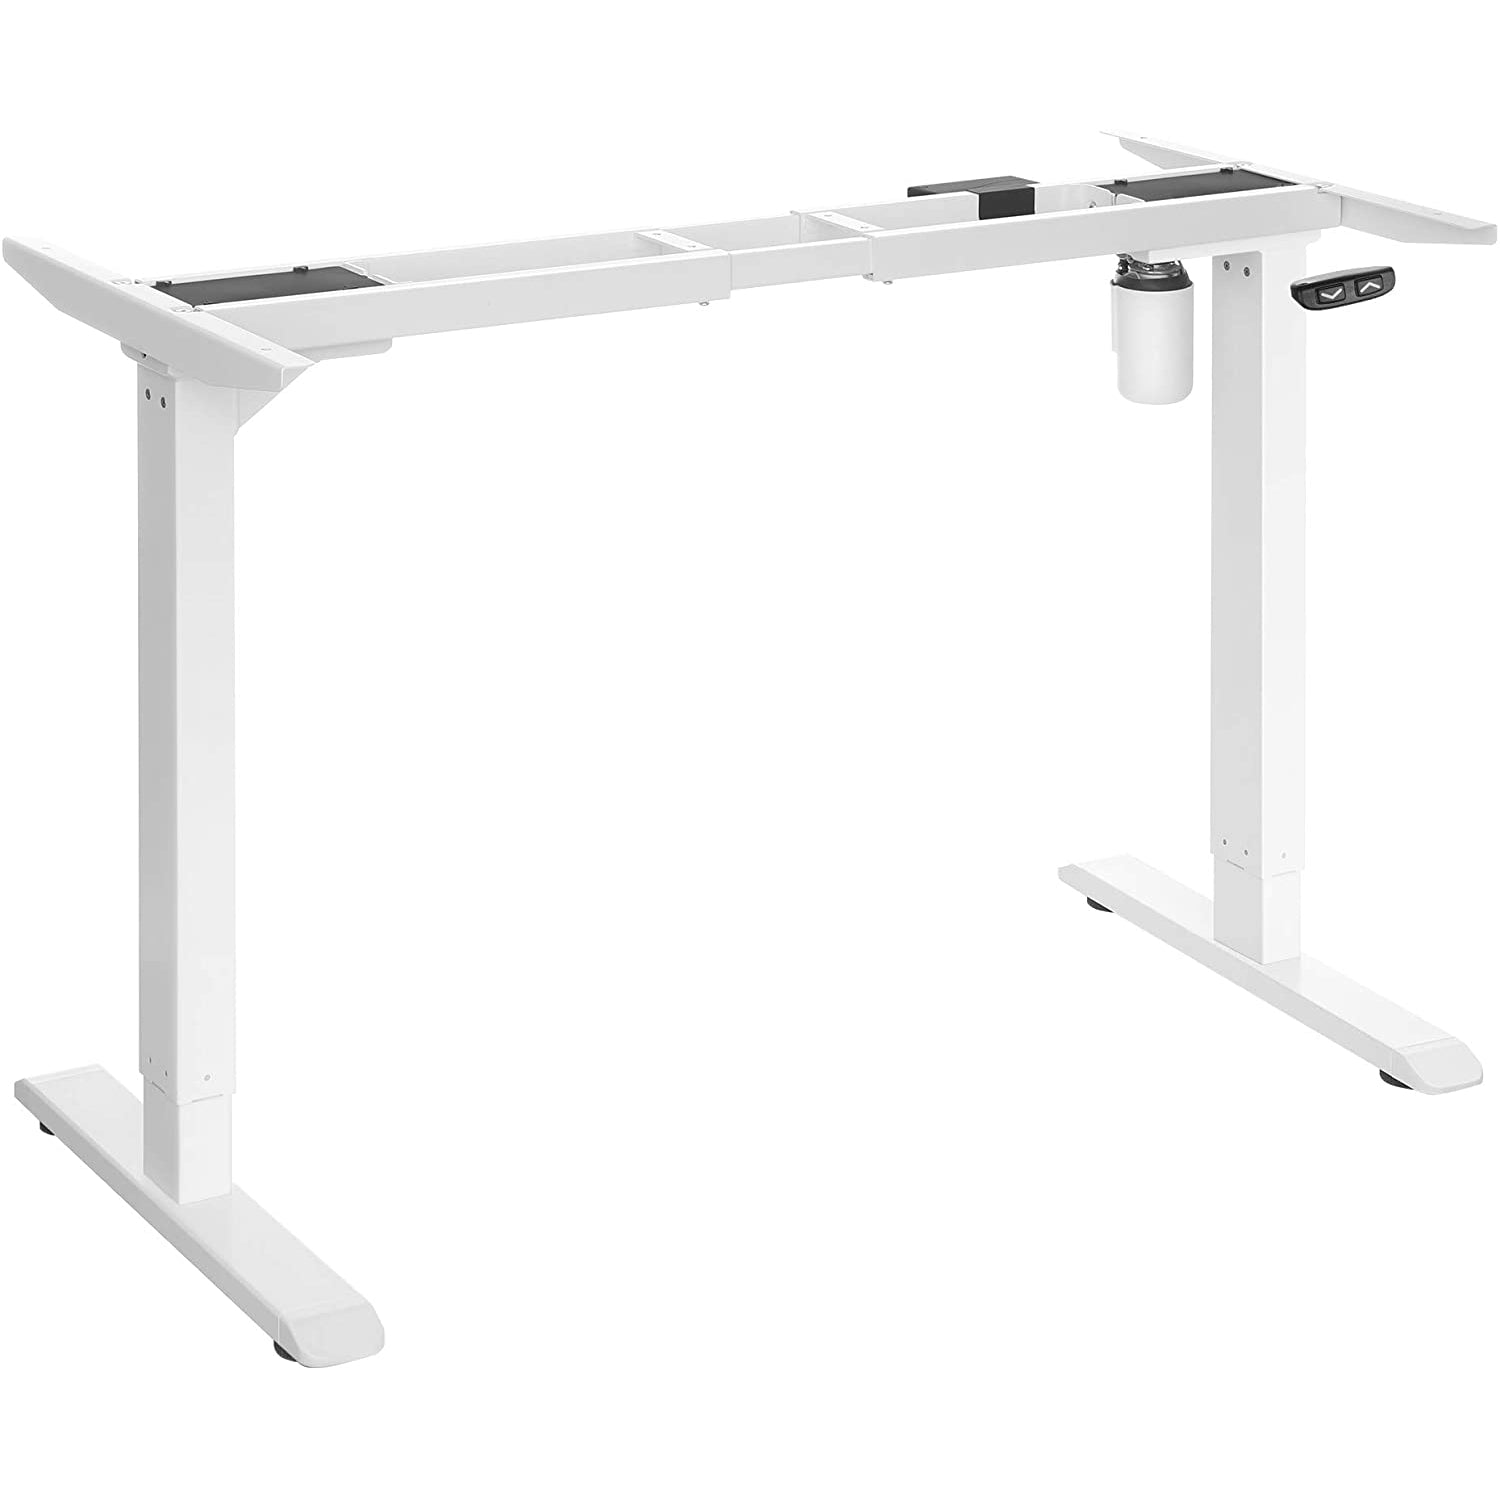 Nancy's Okemos Desk sit-stand frame - Adjustable desk legs - Stand-up desk - Electric sit-stand desk - Height-adjustable desk - Length Adjustable - Steel - White - W115cm to 147cm x D60cm x H71cm to 112cm